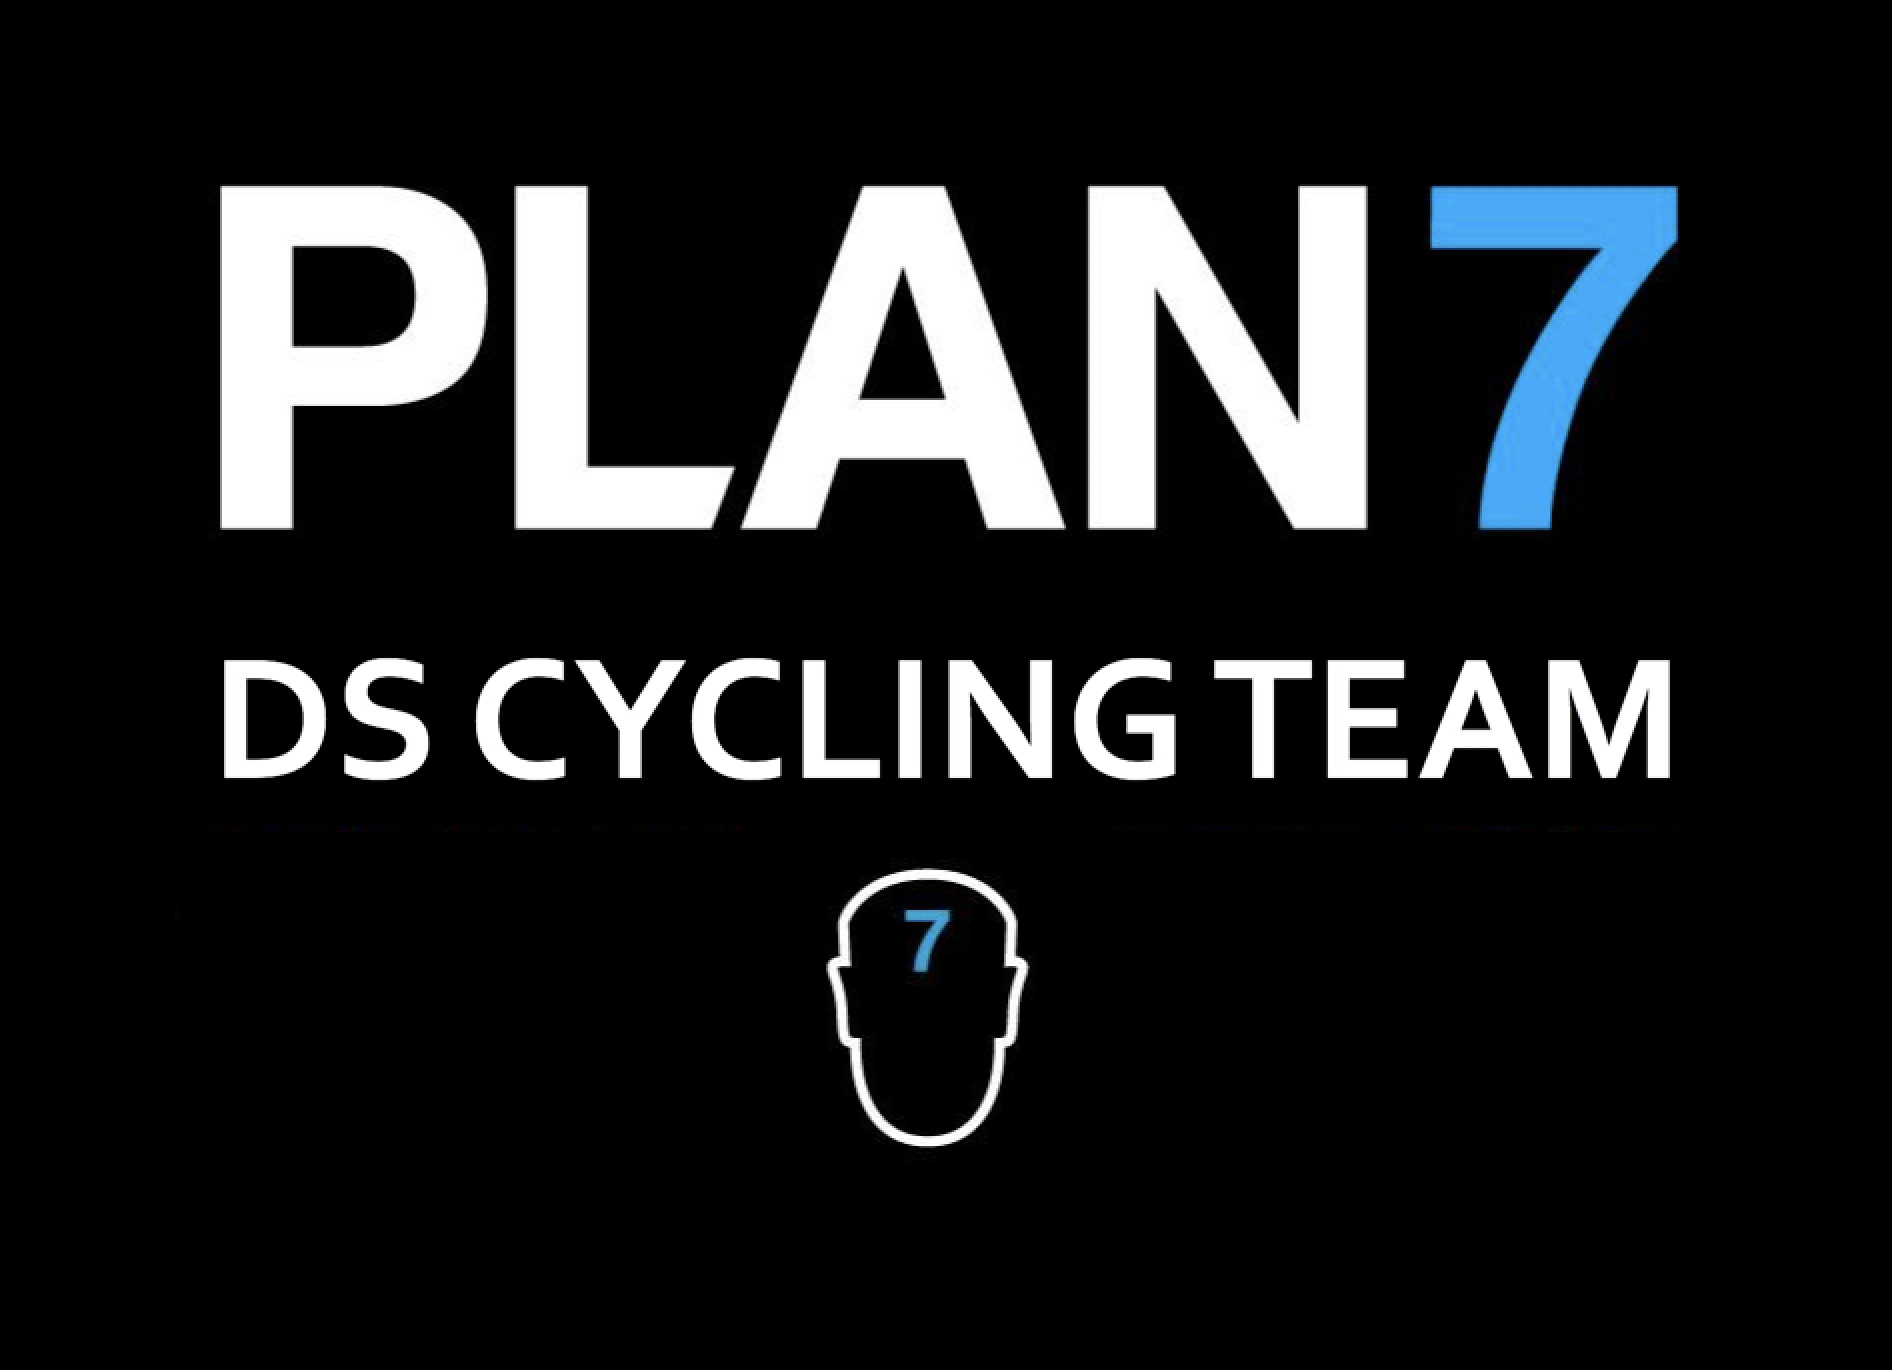 PLAN7 Cycling Team